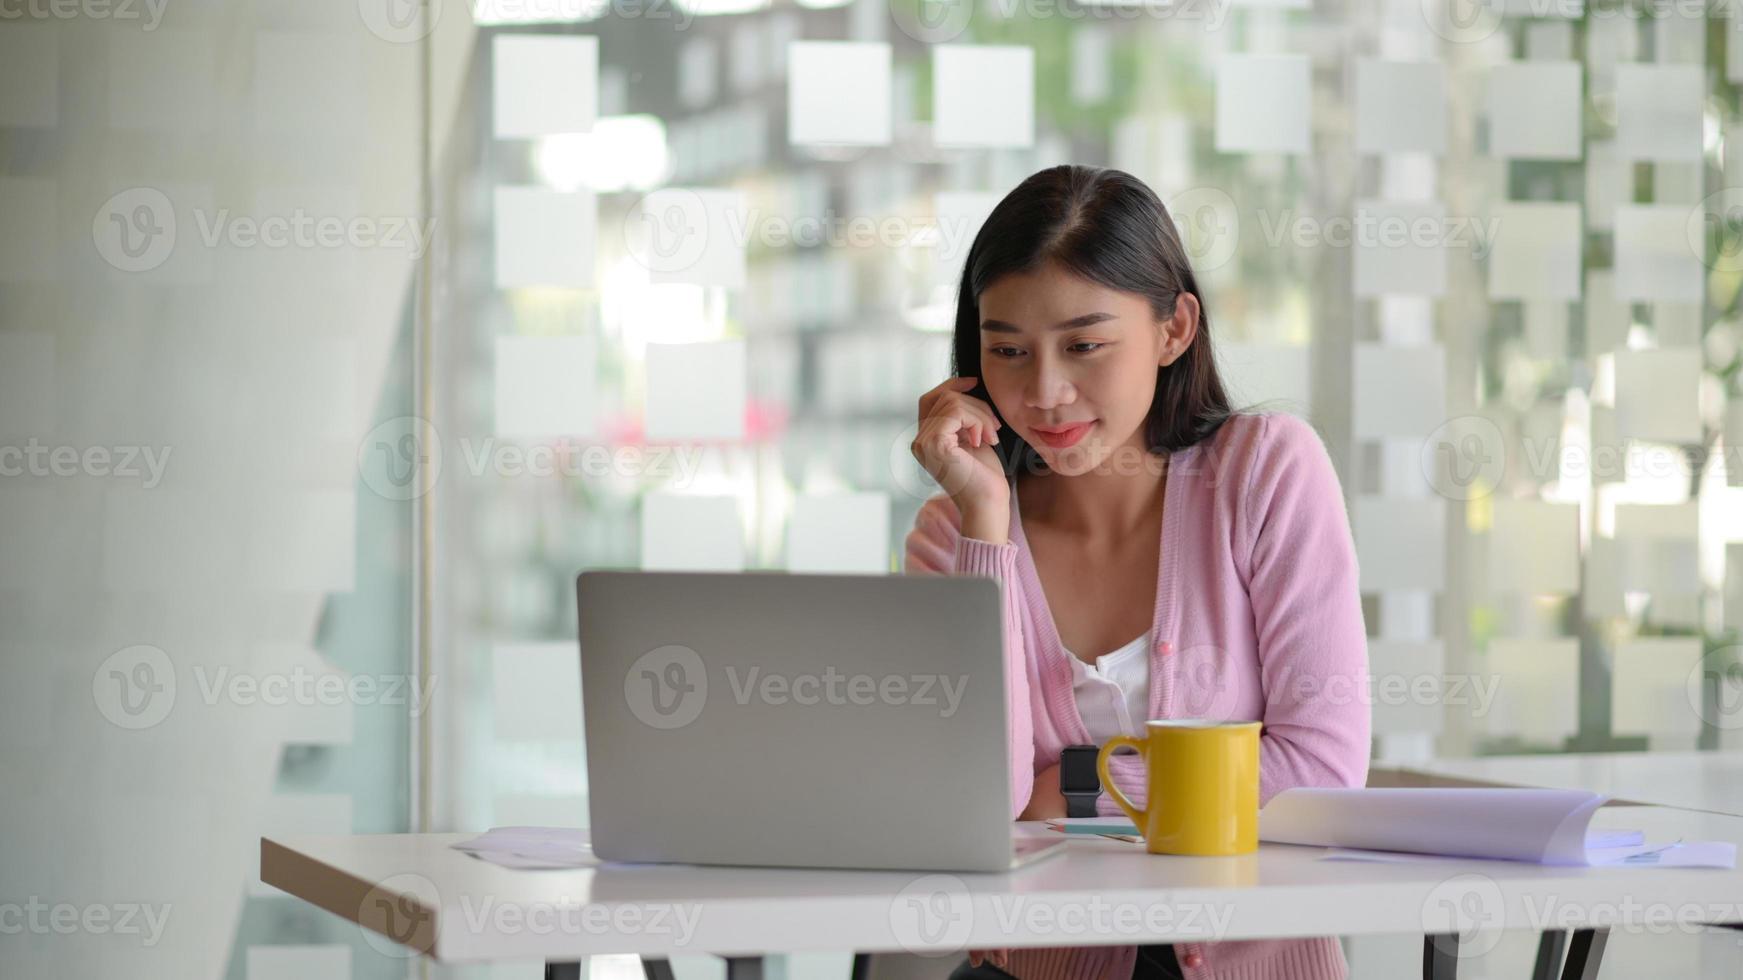 jovens empresárias se concentram em trabalhar um laptop em uma mesa branca em um escritório moderno. foto